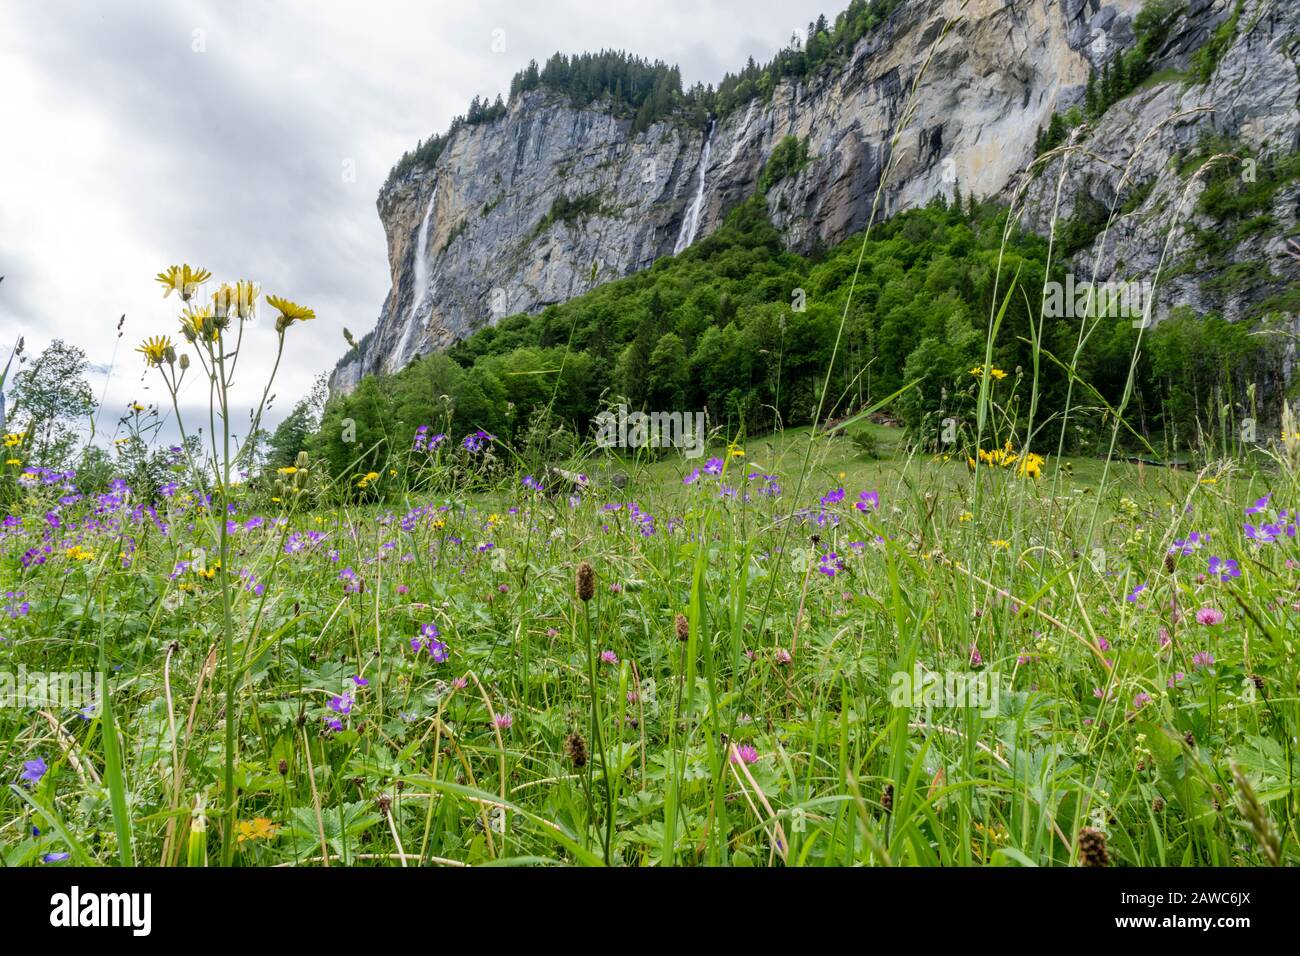 Flower valley in waterfalls valley, Switzerland Stock Photo